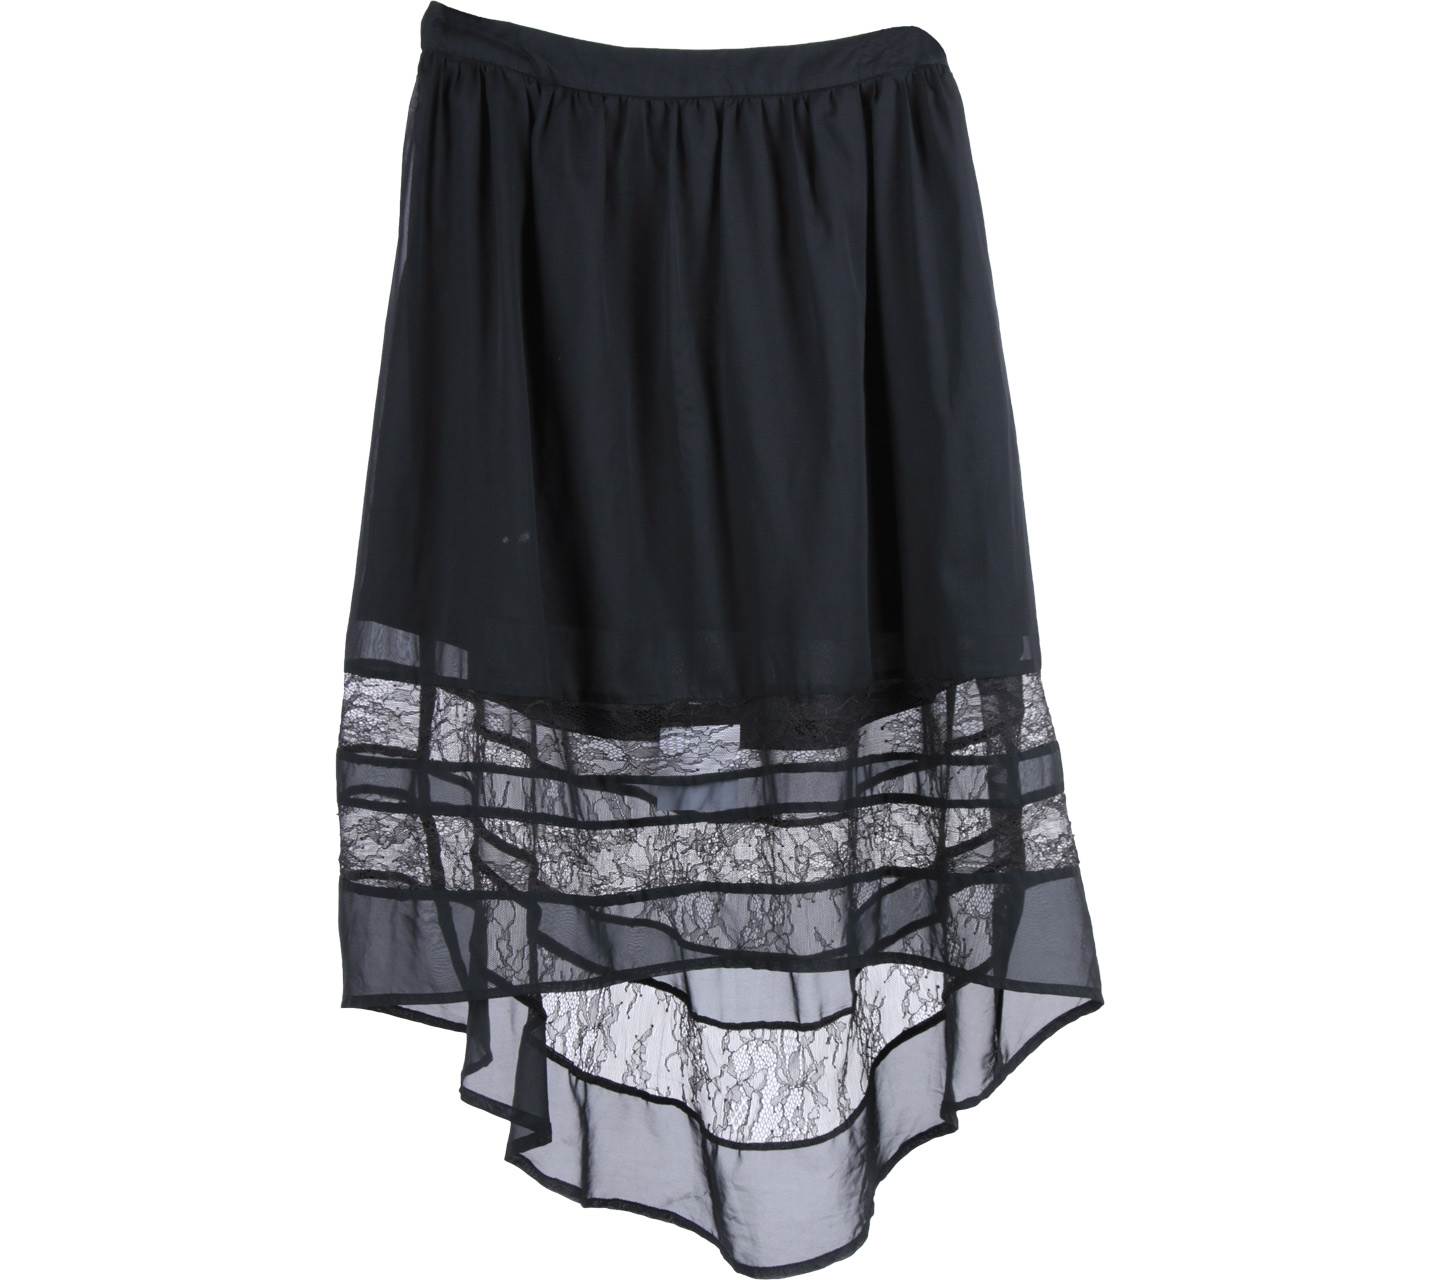 Selected Femme Black Lace Insert Skirt